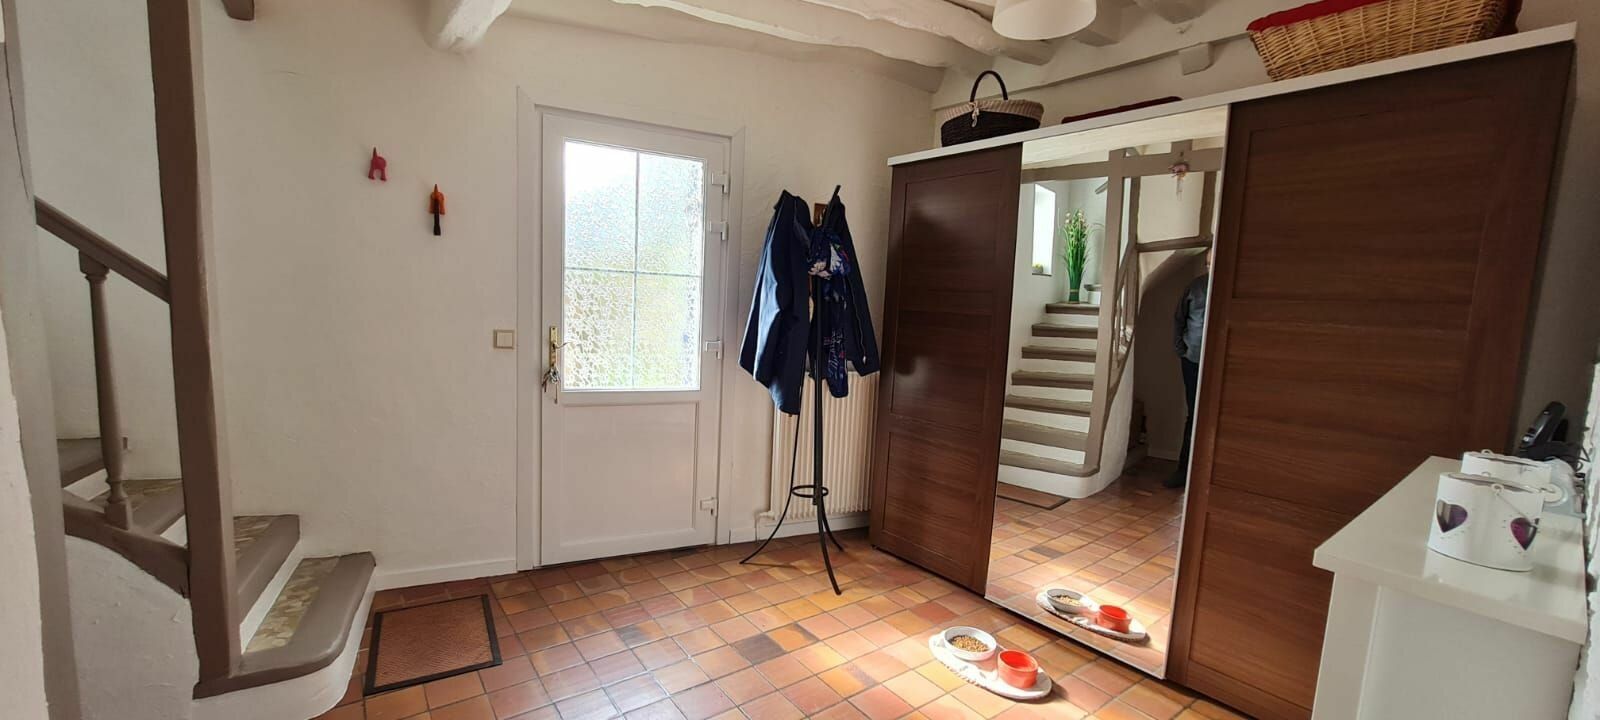 Maison à vendre 4 130m2 à Saâcy-sur-Marne vignette-6